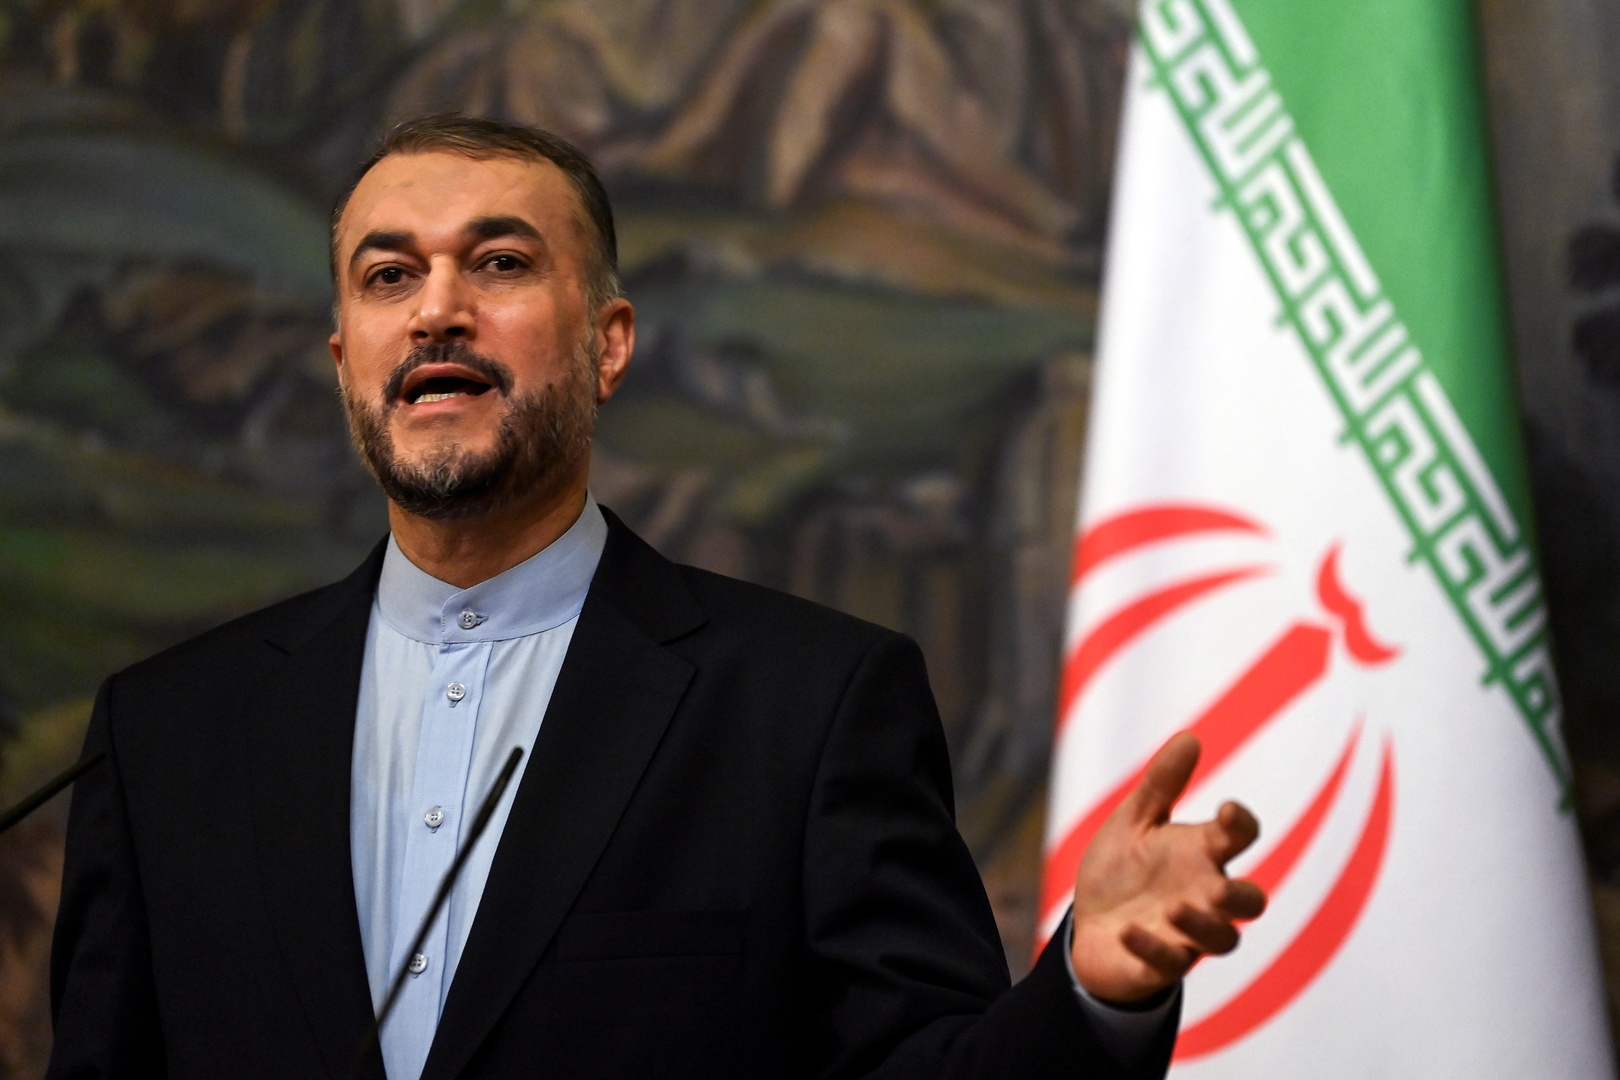 عبد اللهيان: ايران تمتلك الارادة اللازمة للوصول الى اتفاق جيد في مفاوضات فيينا